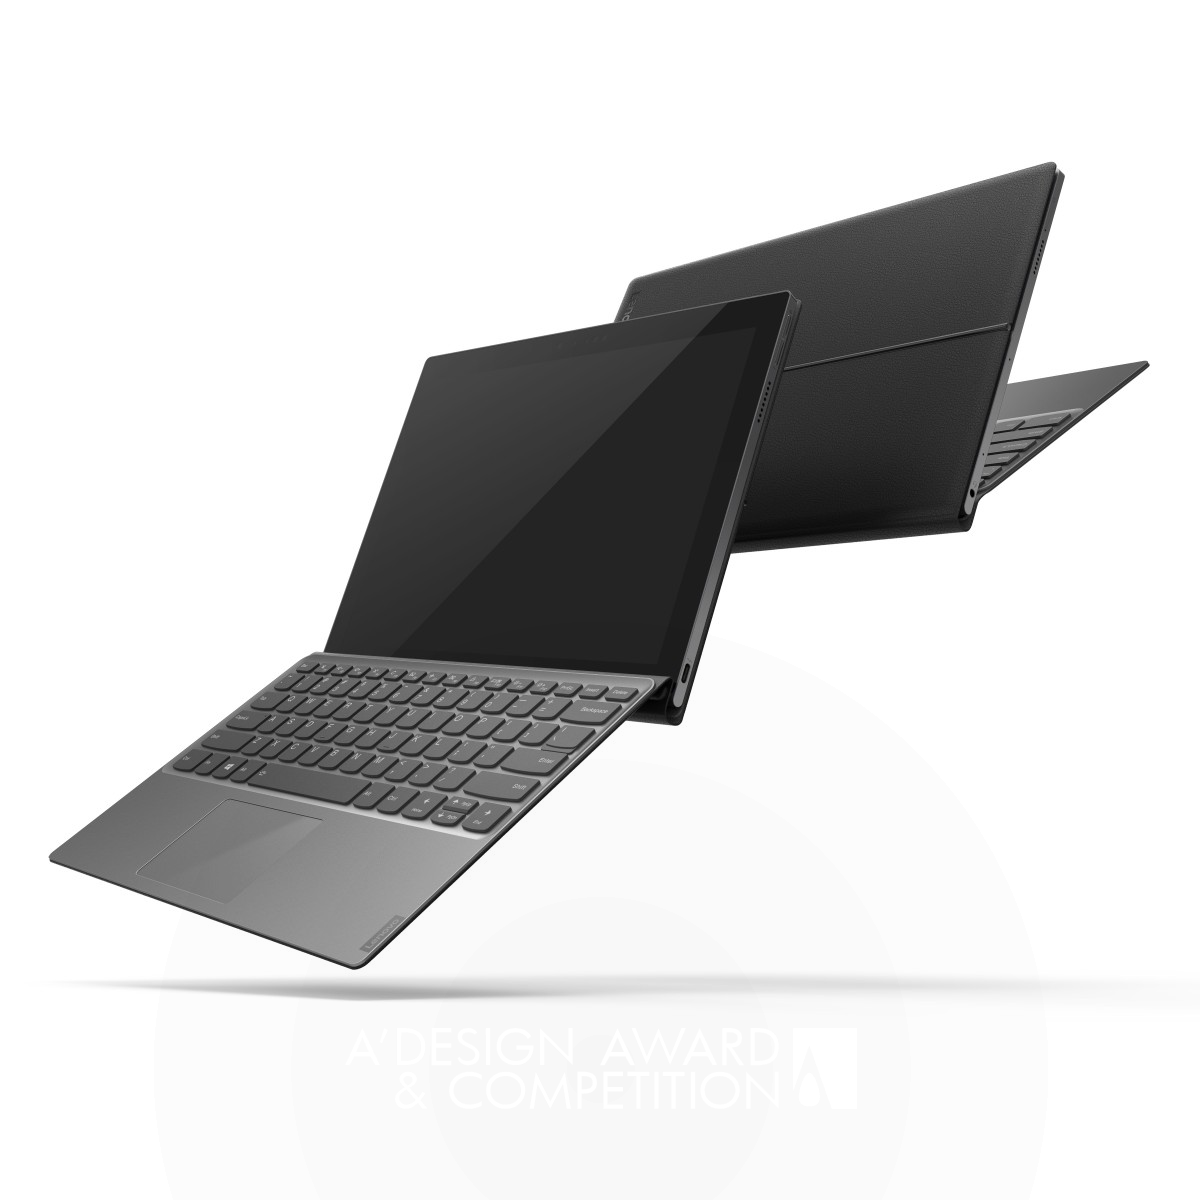 Lenovo Design Group laptop computer